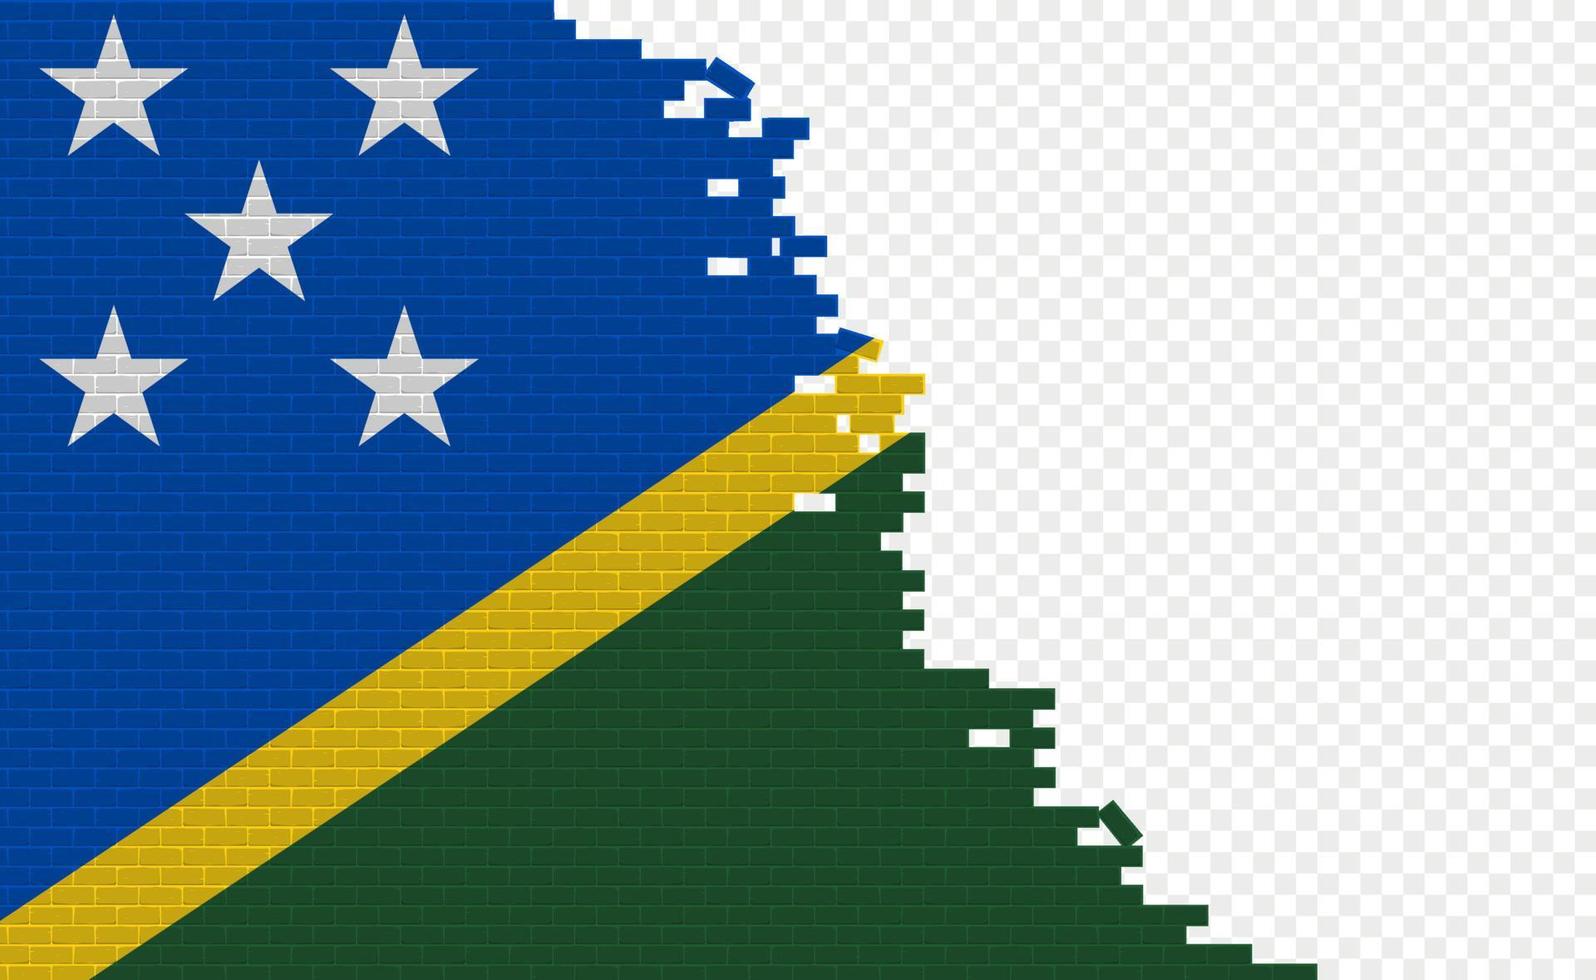 bandera de las islas salomón en la pared de ladrillos rotos. campo de bandera vacío de otro país. comparación de países. fácil edición y vector en grupos.